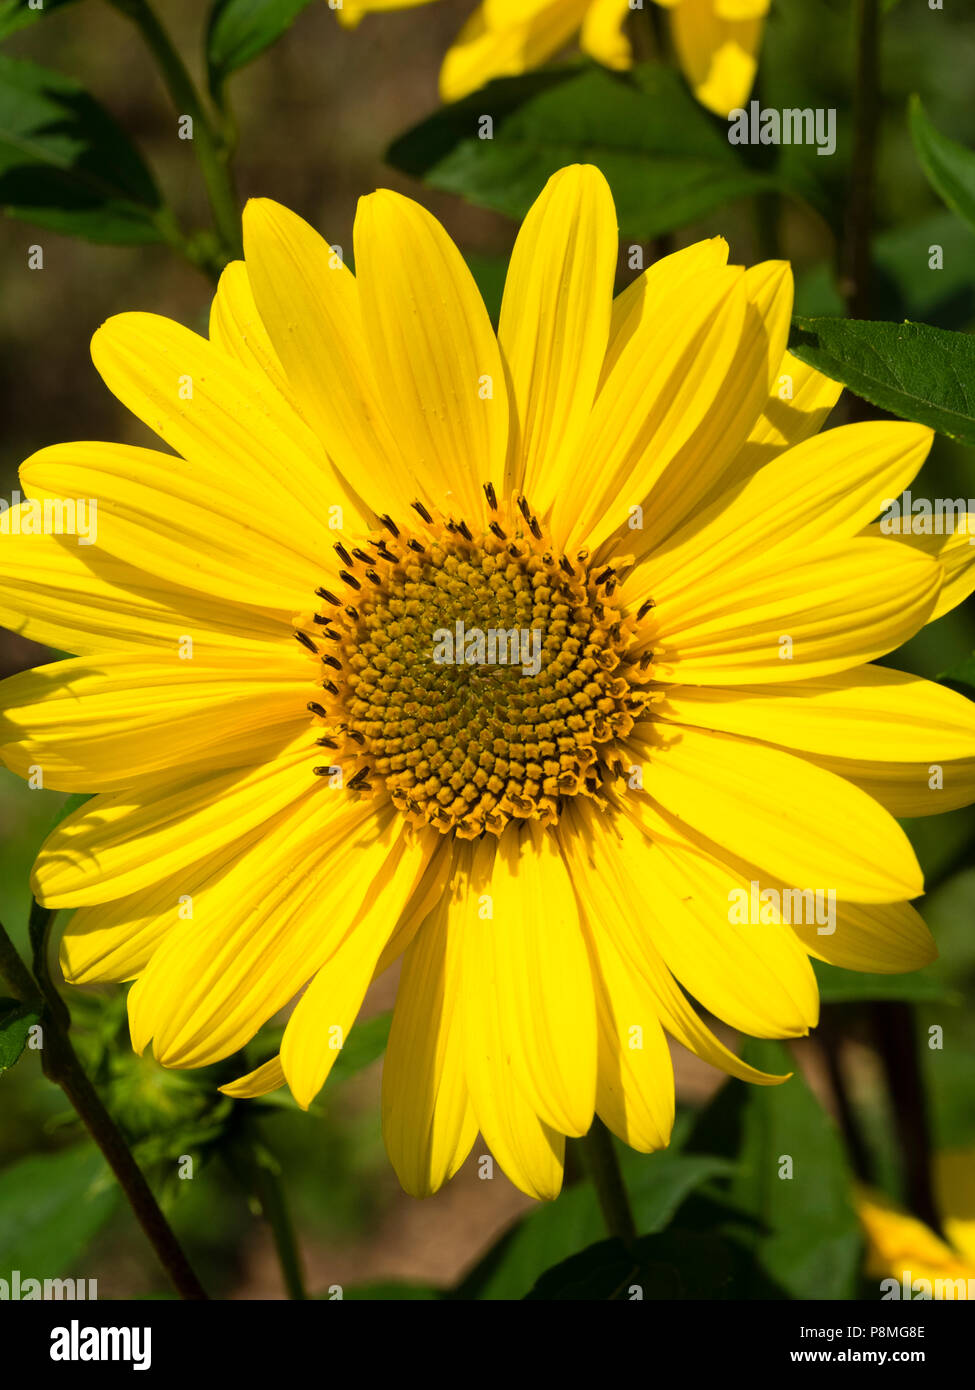 Di colore giallo brillante ray e petali di colore giallo scuro centro della perenne, girasole Helianthus Telefauno 'oro puro' Foto Stock